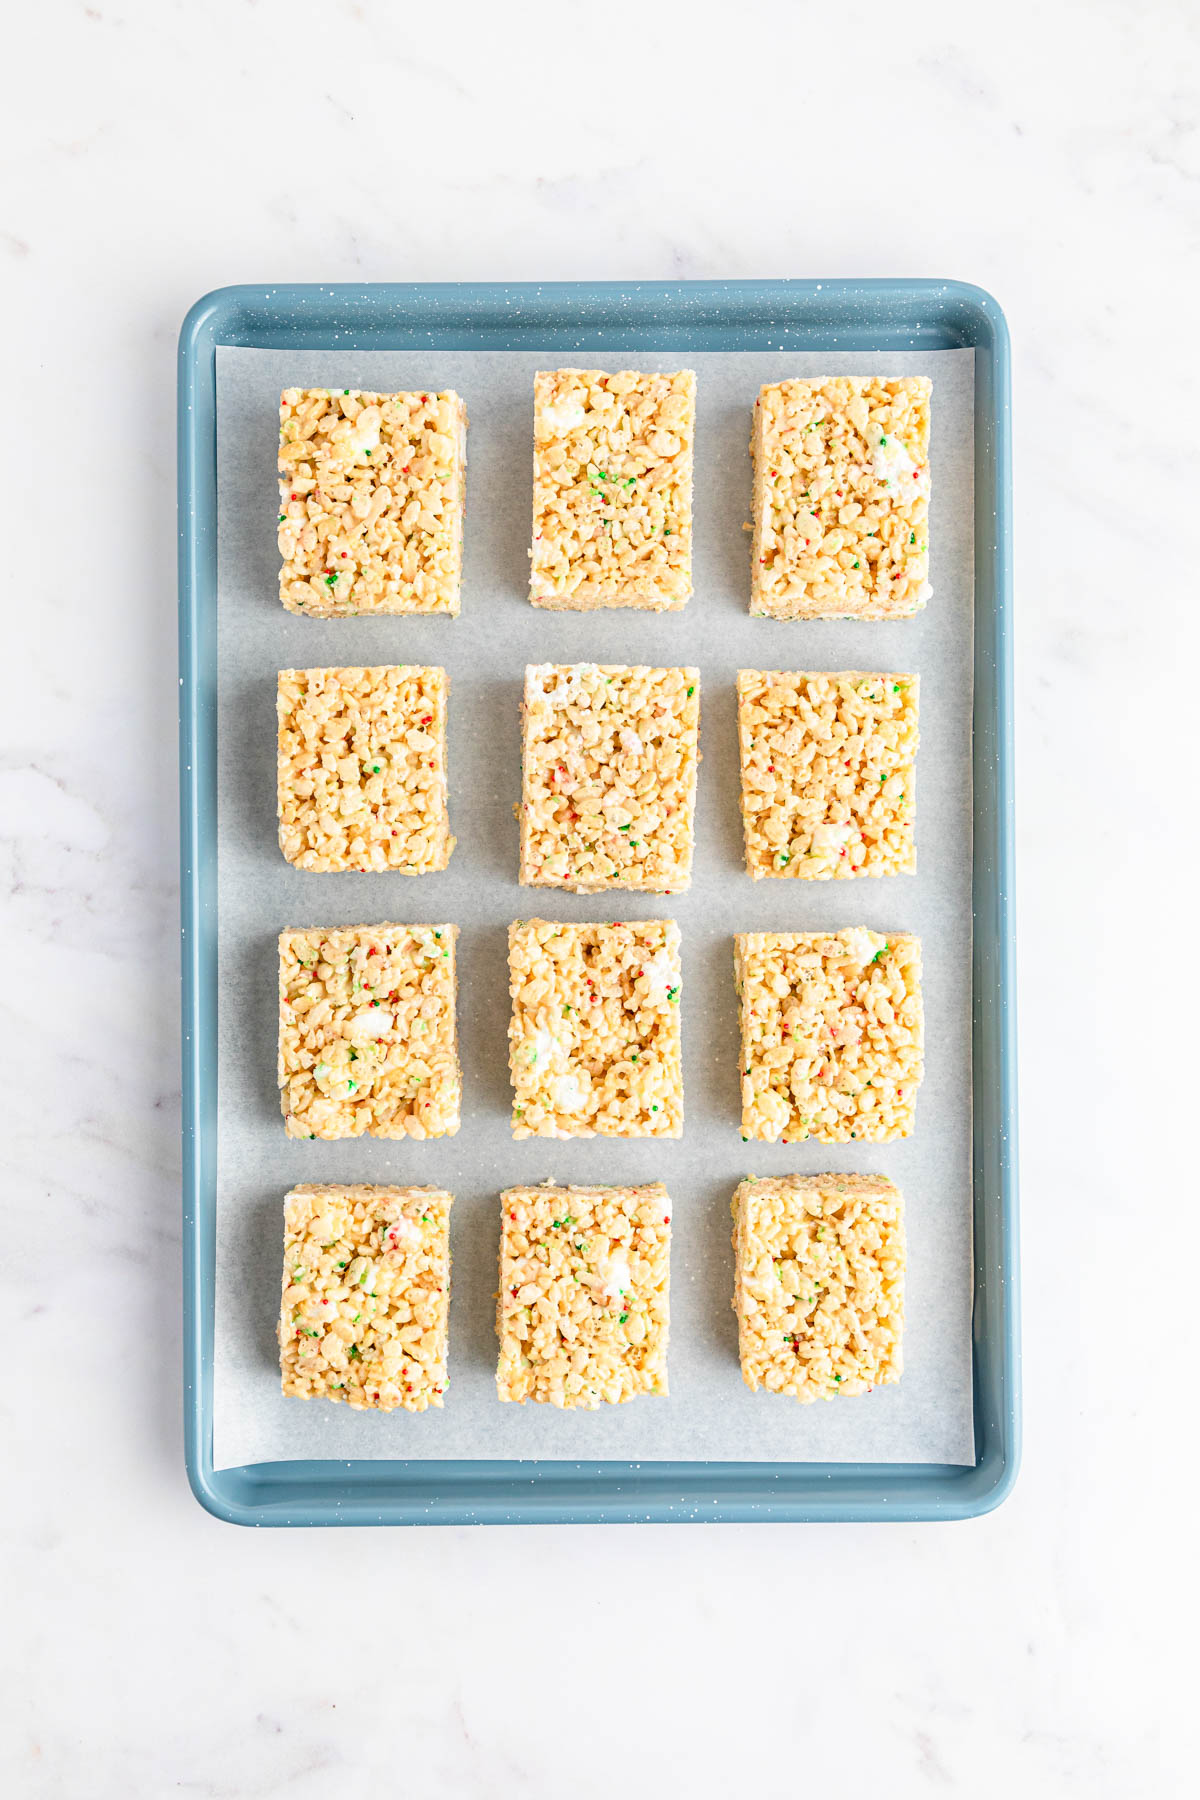 Rice krispie squares on a baking sheet.